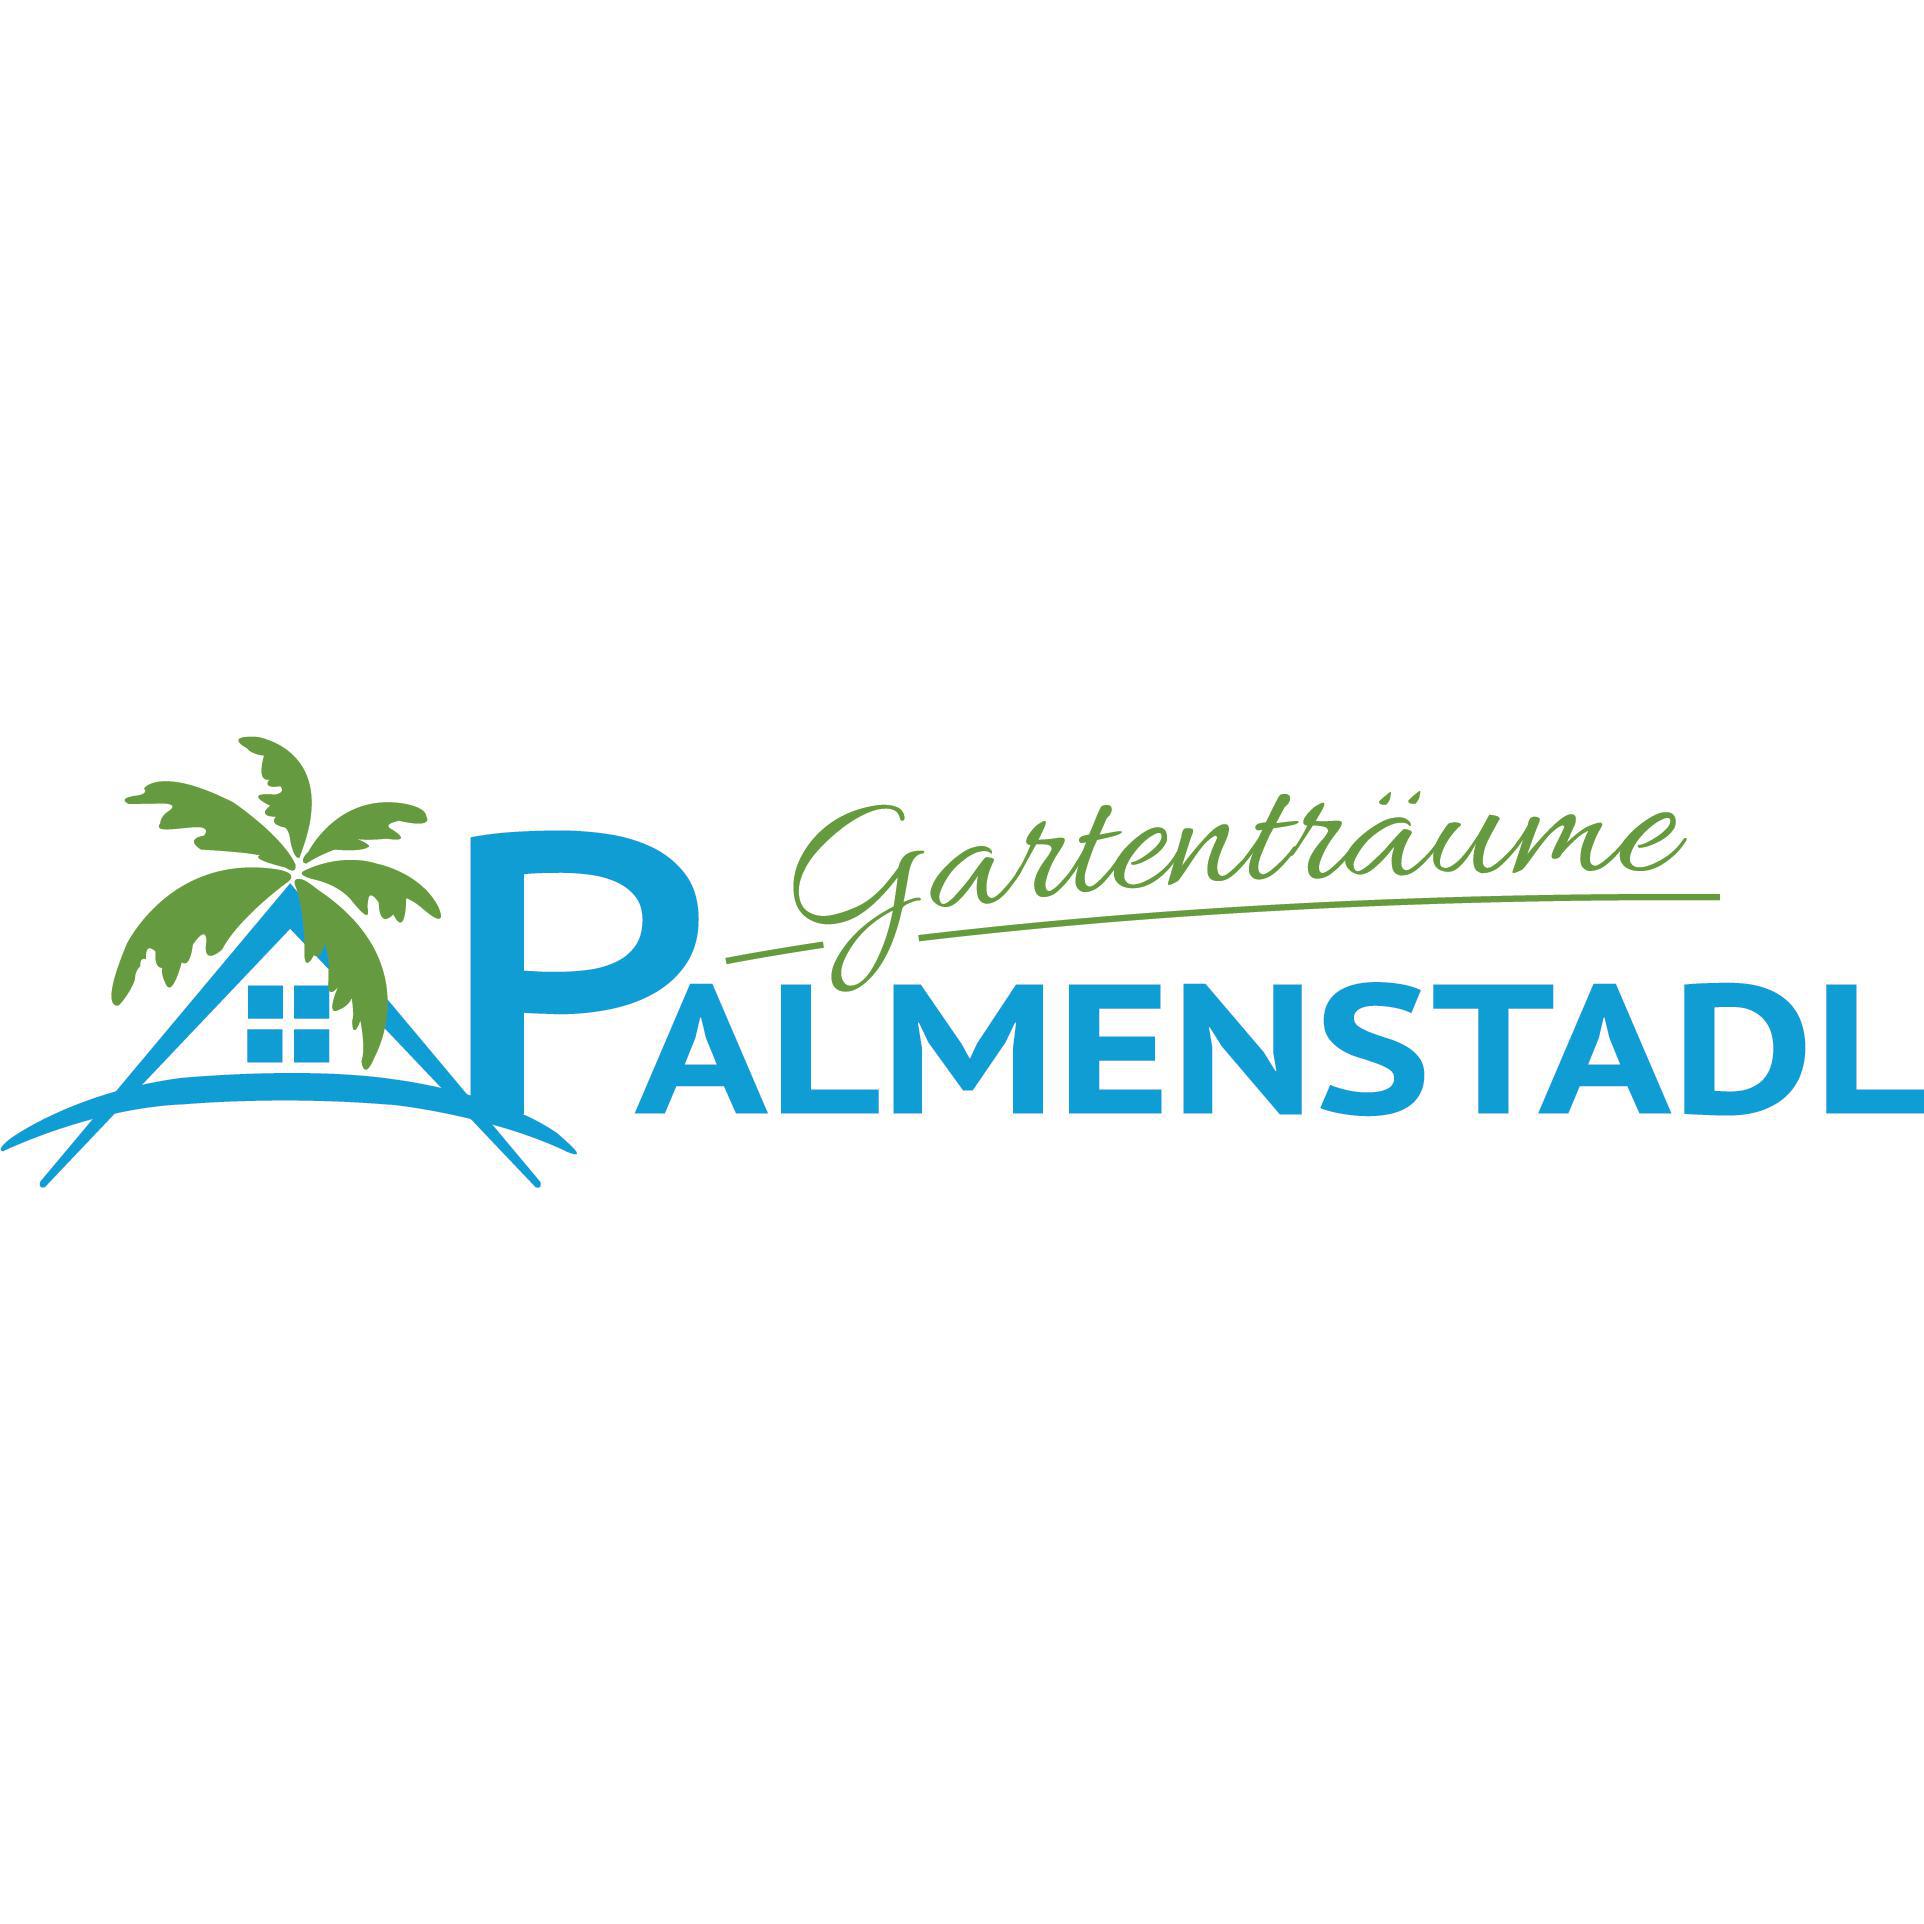 Gabi u. Karl Schindlbeck GbR Der Palmenstadl in Pfakofen - Logo